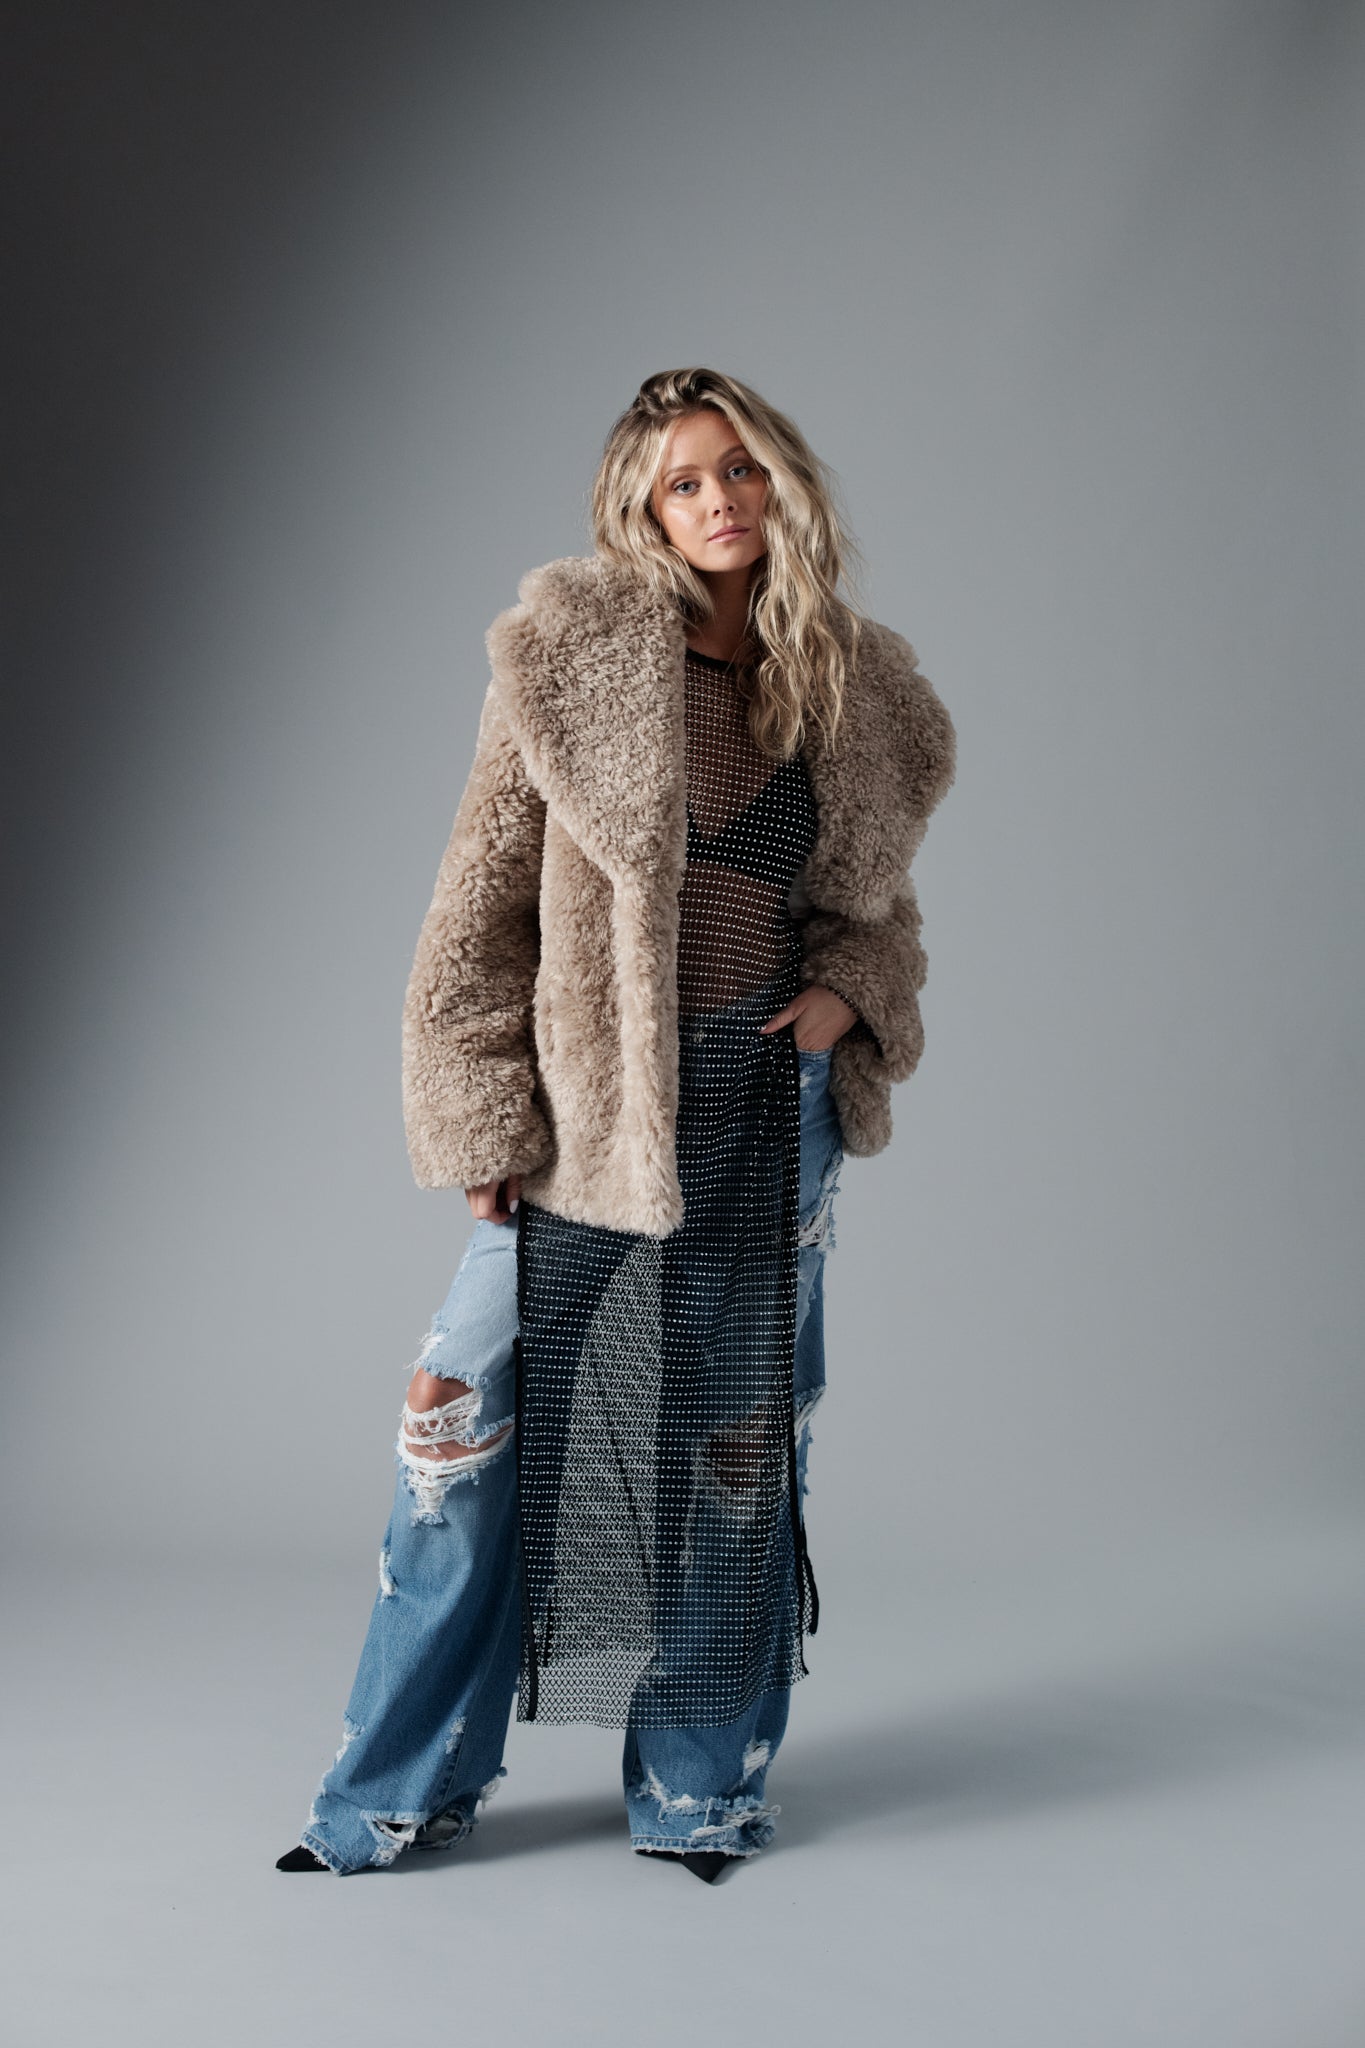 Hannah Godwin wearing beige faux fur coat, mesh see-through dress, destruction denim jeans by Avec Les Filles women's fashion clothing